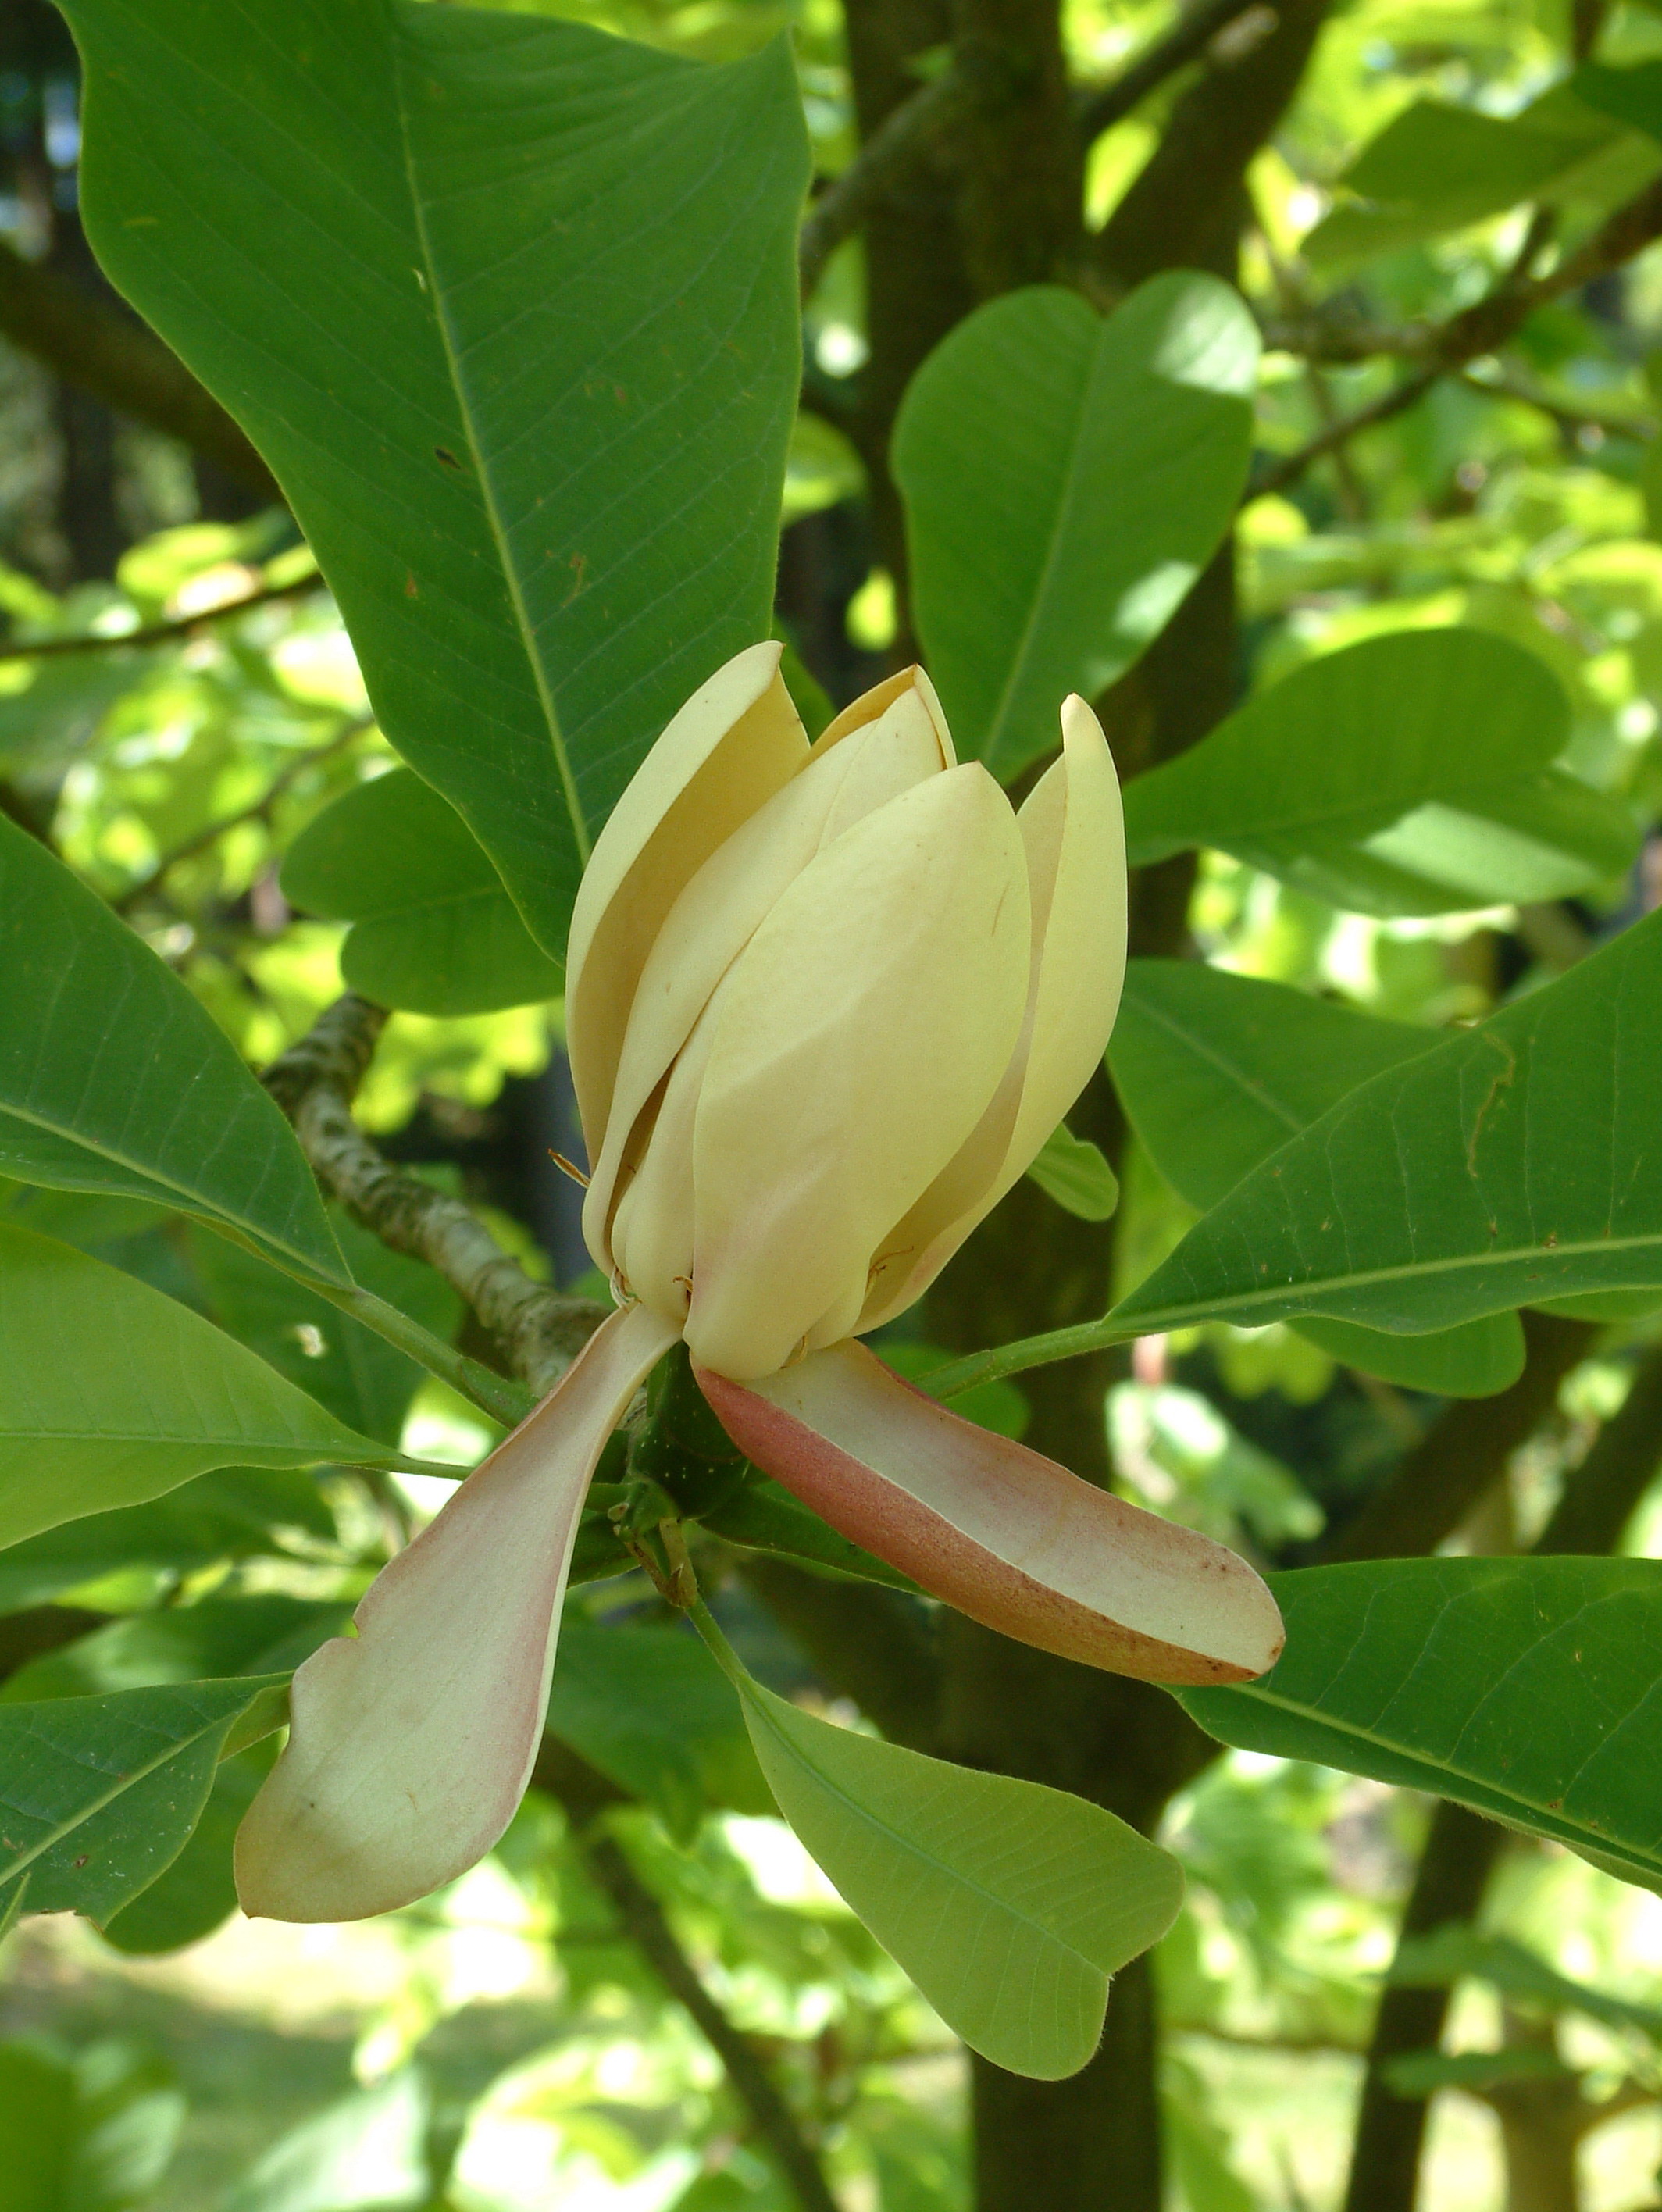 Zdjęcie prxzedstawia kwiat magnolii lekarskiej - jednego z najciekawszych gatunków w ogrodzie